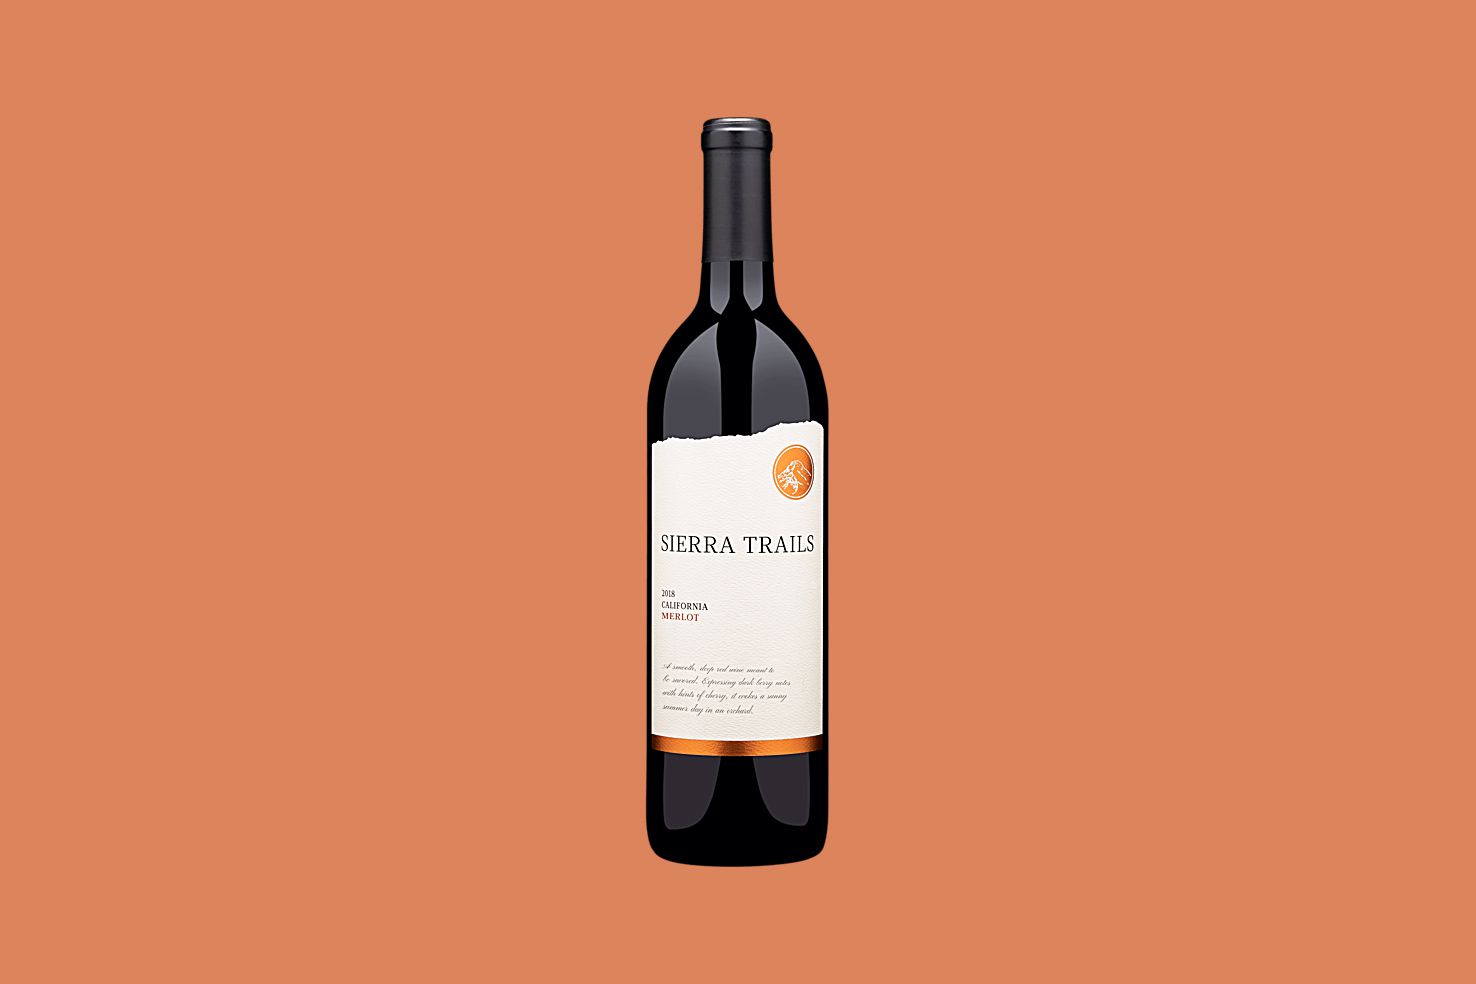 red wine martha stewart sierra trails